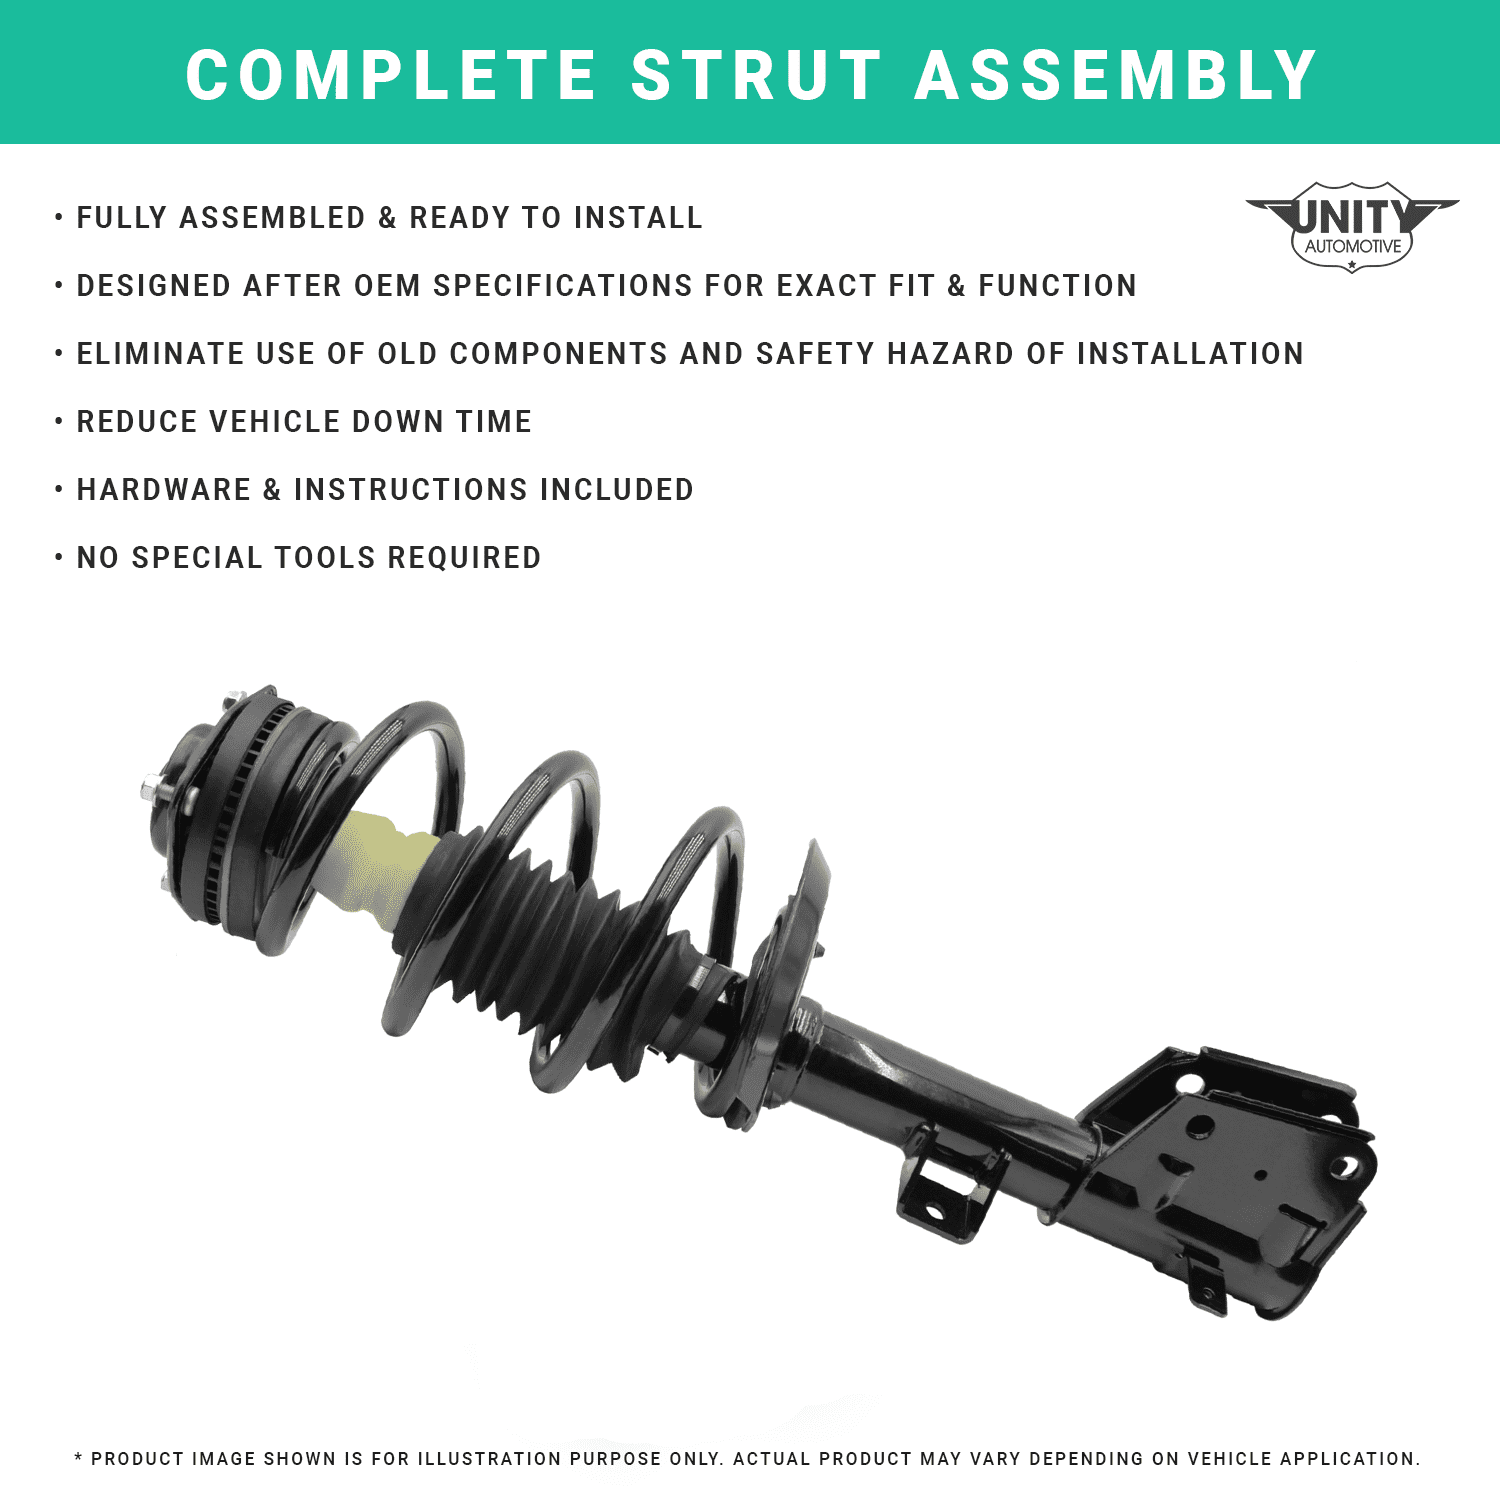 Unity Automotive Front & Rear Complete Strut Assembly Kit Fits